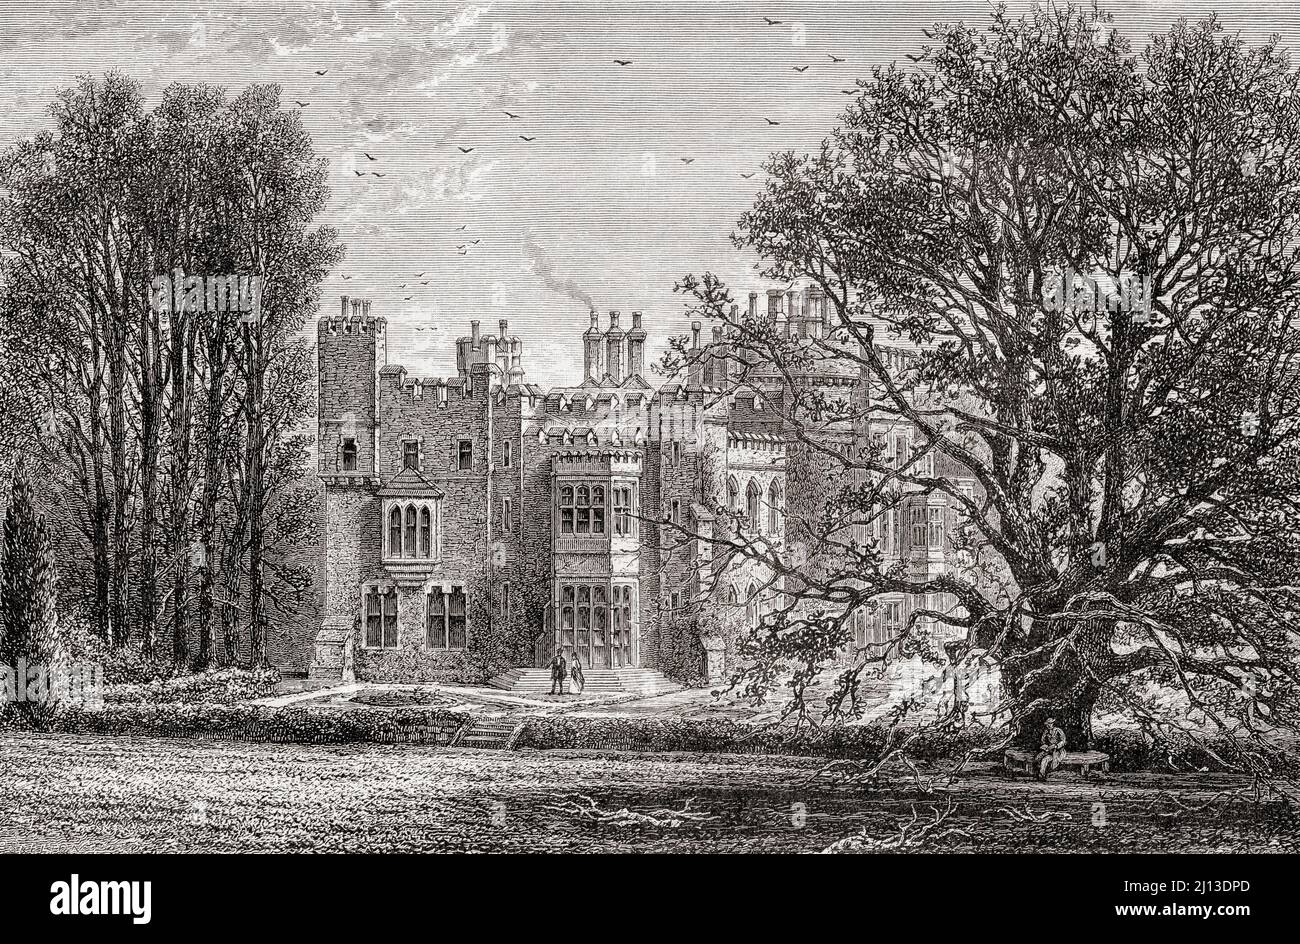 Hawarden Castle, Hawarden, Flintshire, Wales. Es war der Nachlass des ehemaligen britischen Premierministers William Gladstone. Aus Welsh Pictures, veröffentlicht 1880. Stockfoto